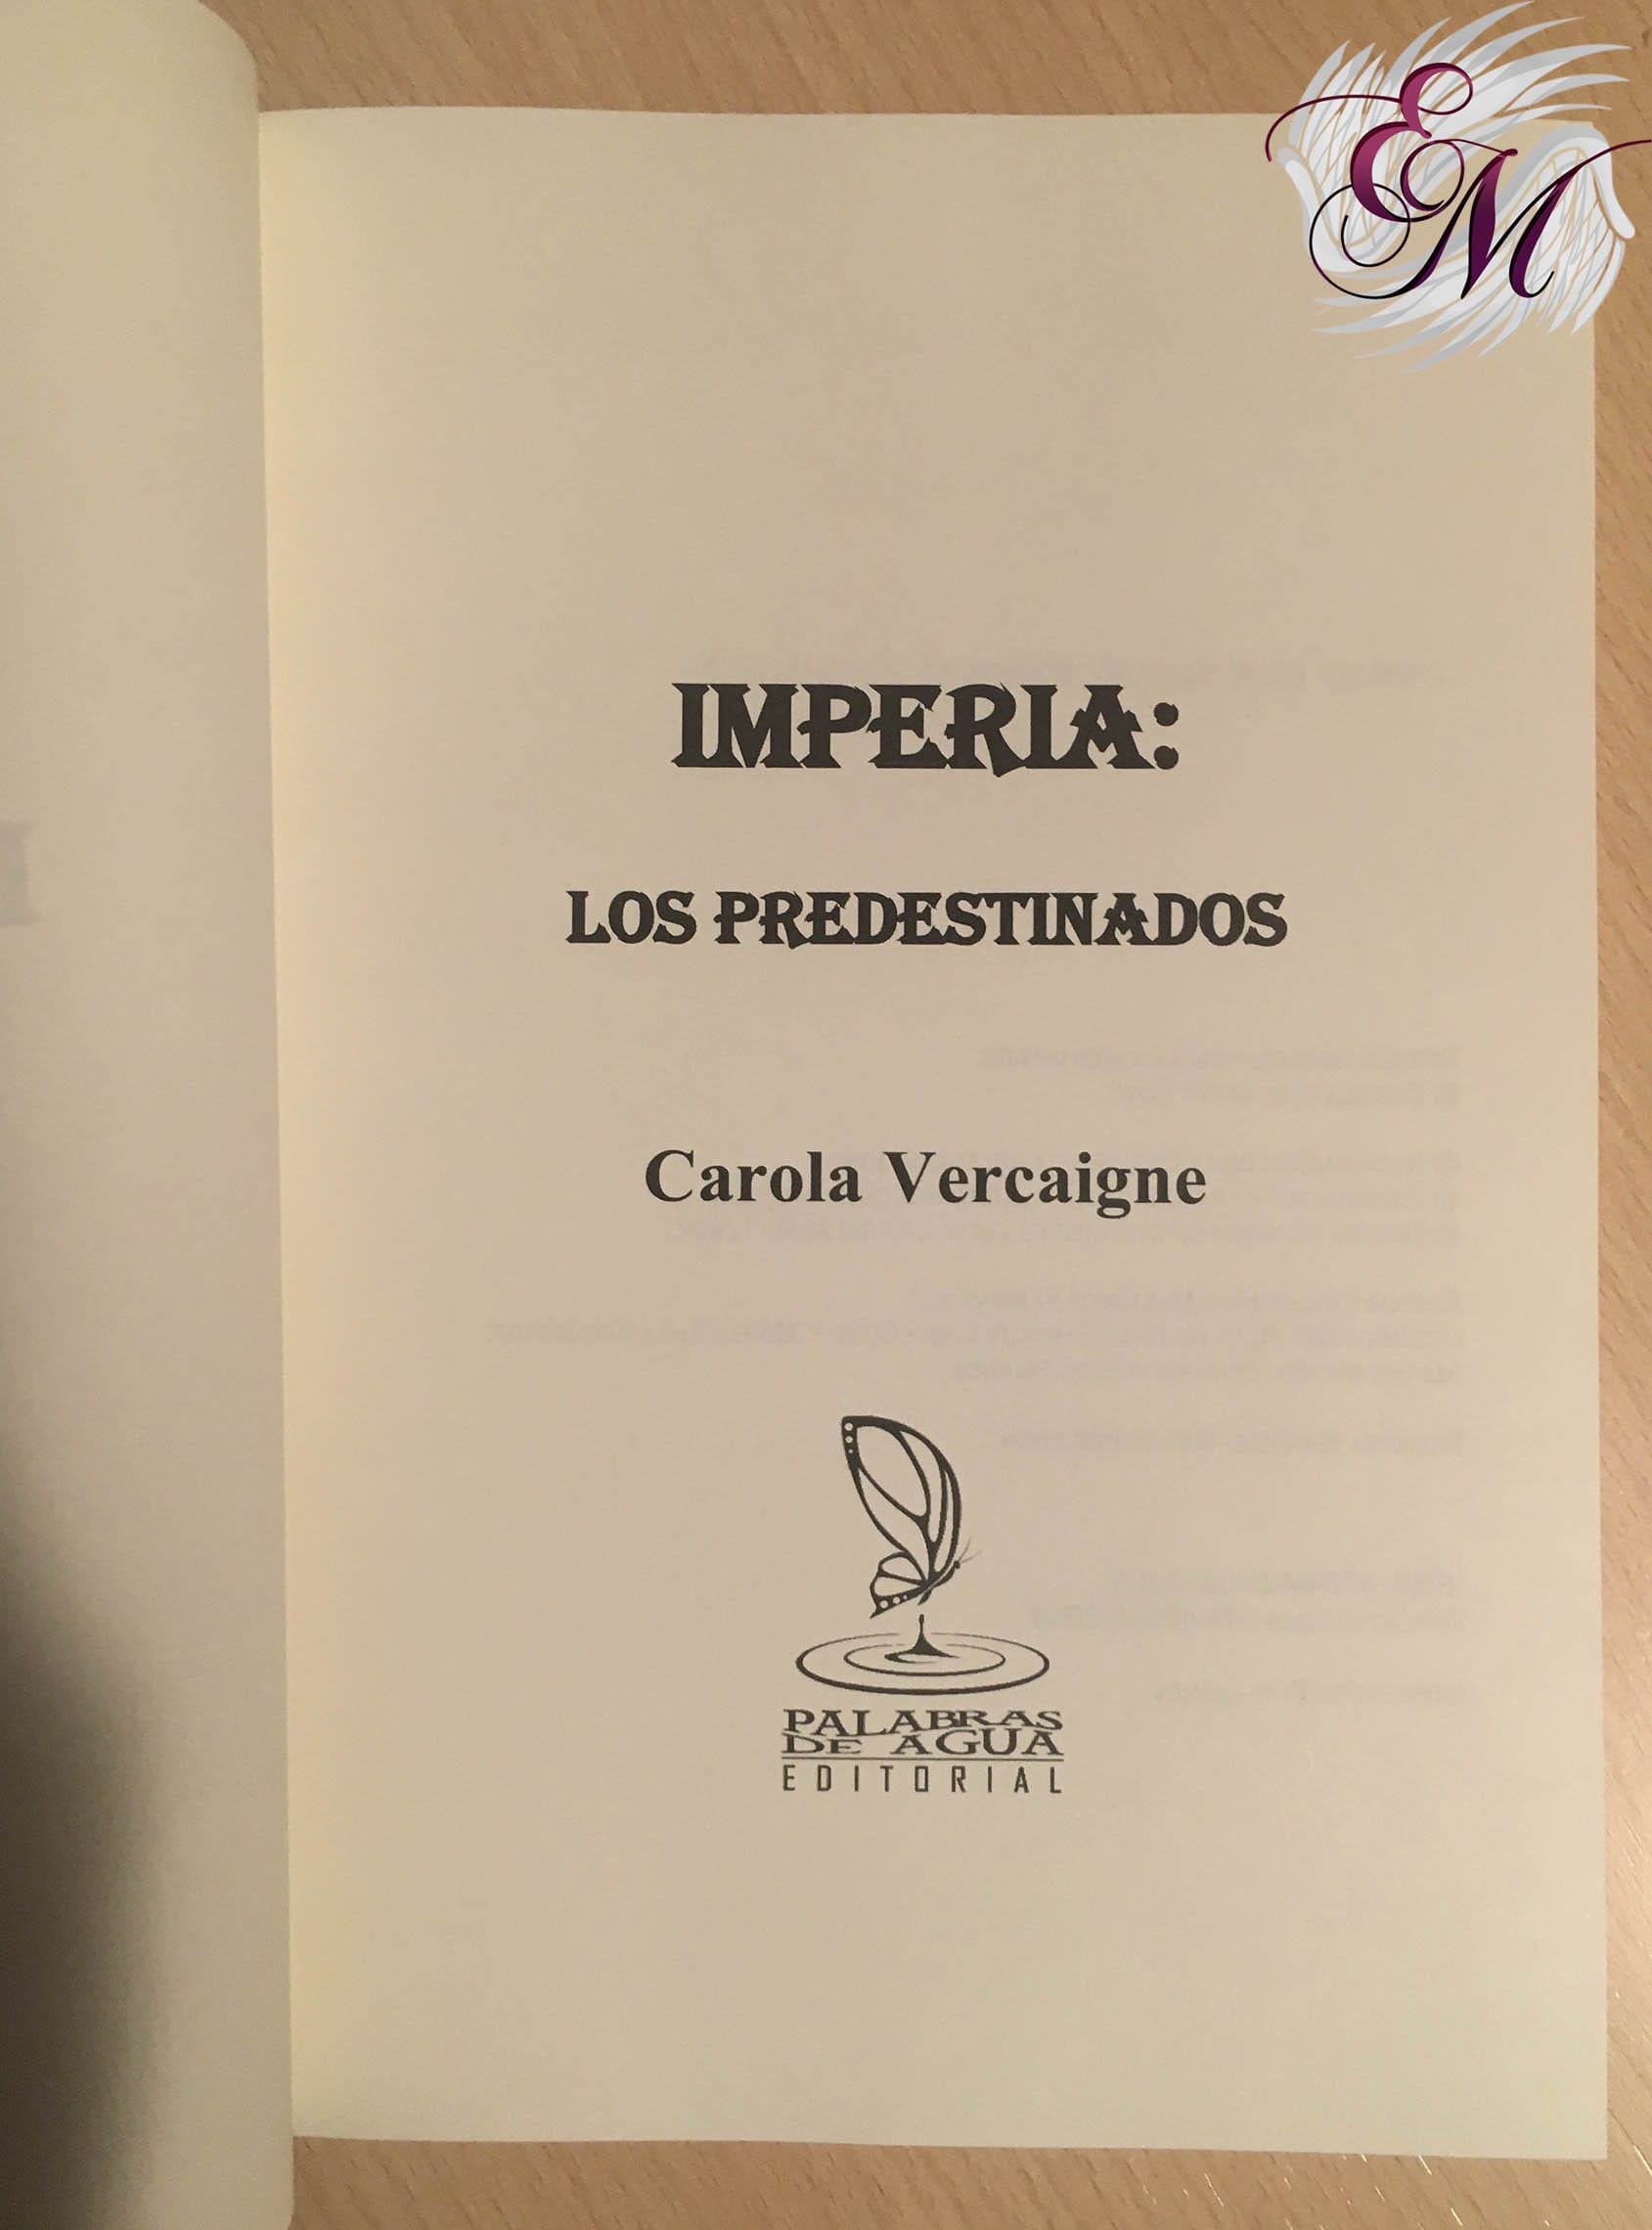 Imperia: Los predestinados, de Carola Vercaigne - Reseña